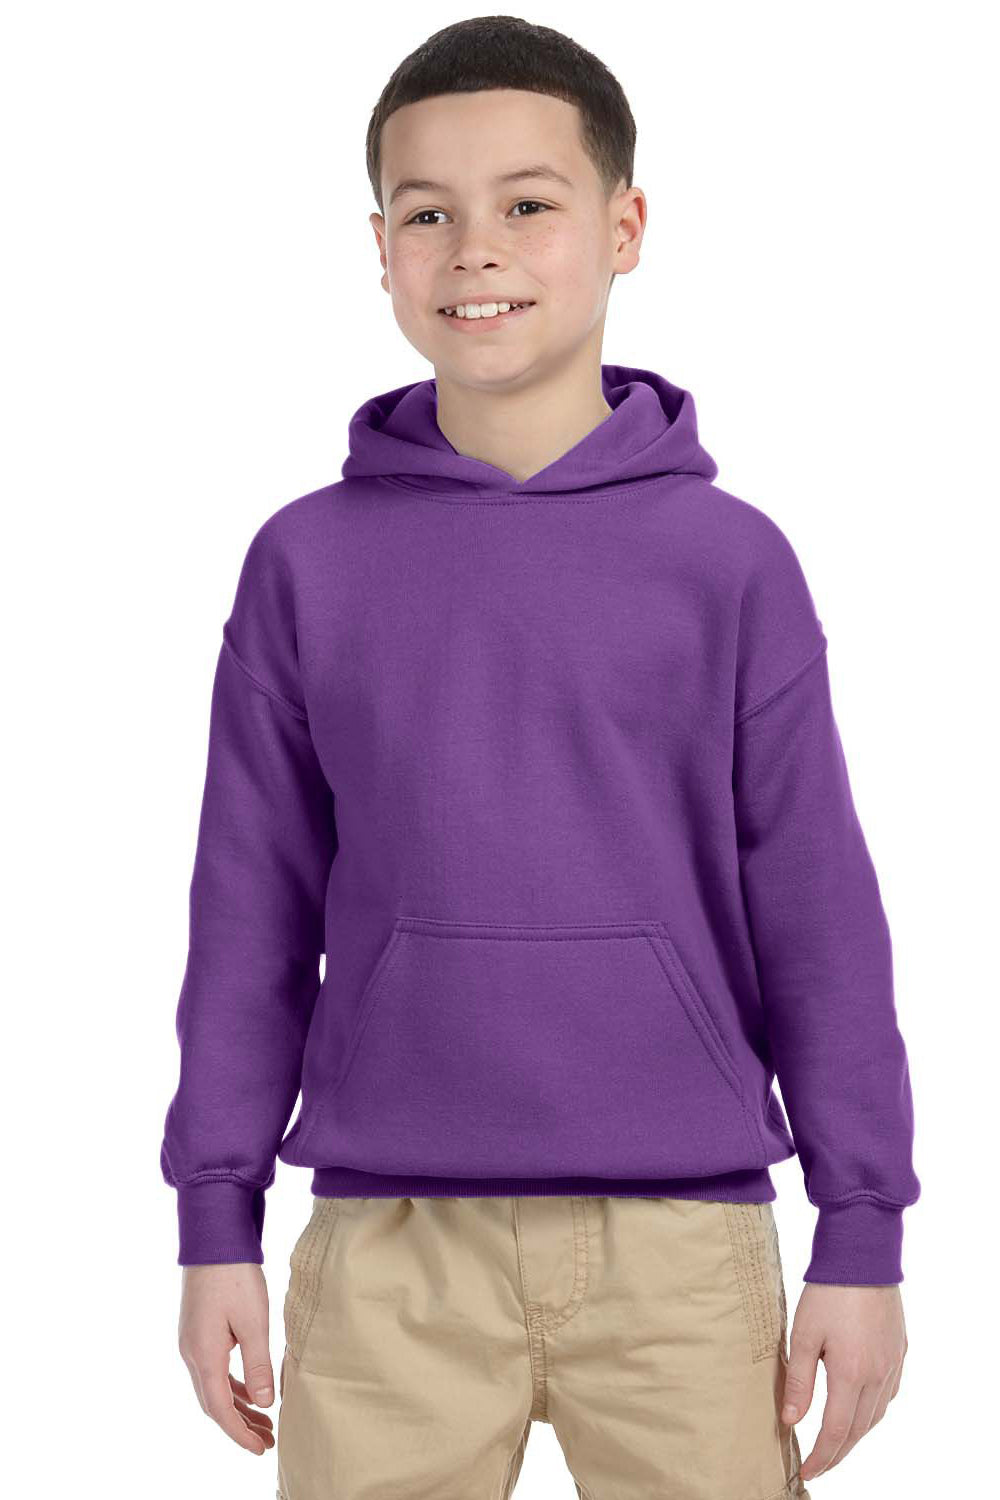 Gildan G185B Youth Hooded Sweatshirt Hoodie Purple Front